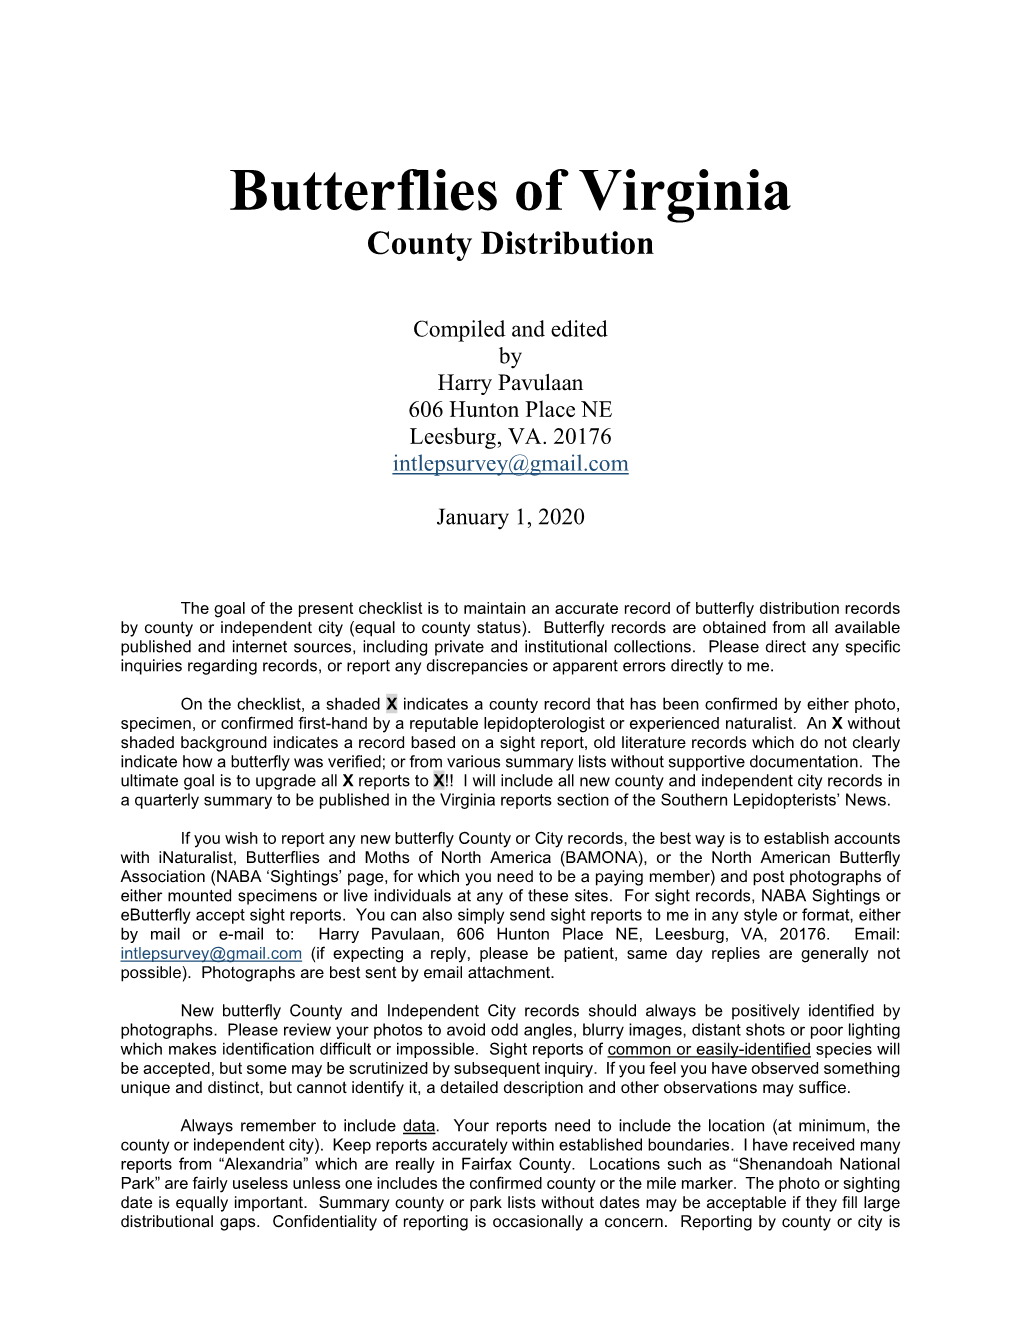 Butterflies of Virginia Checklist